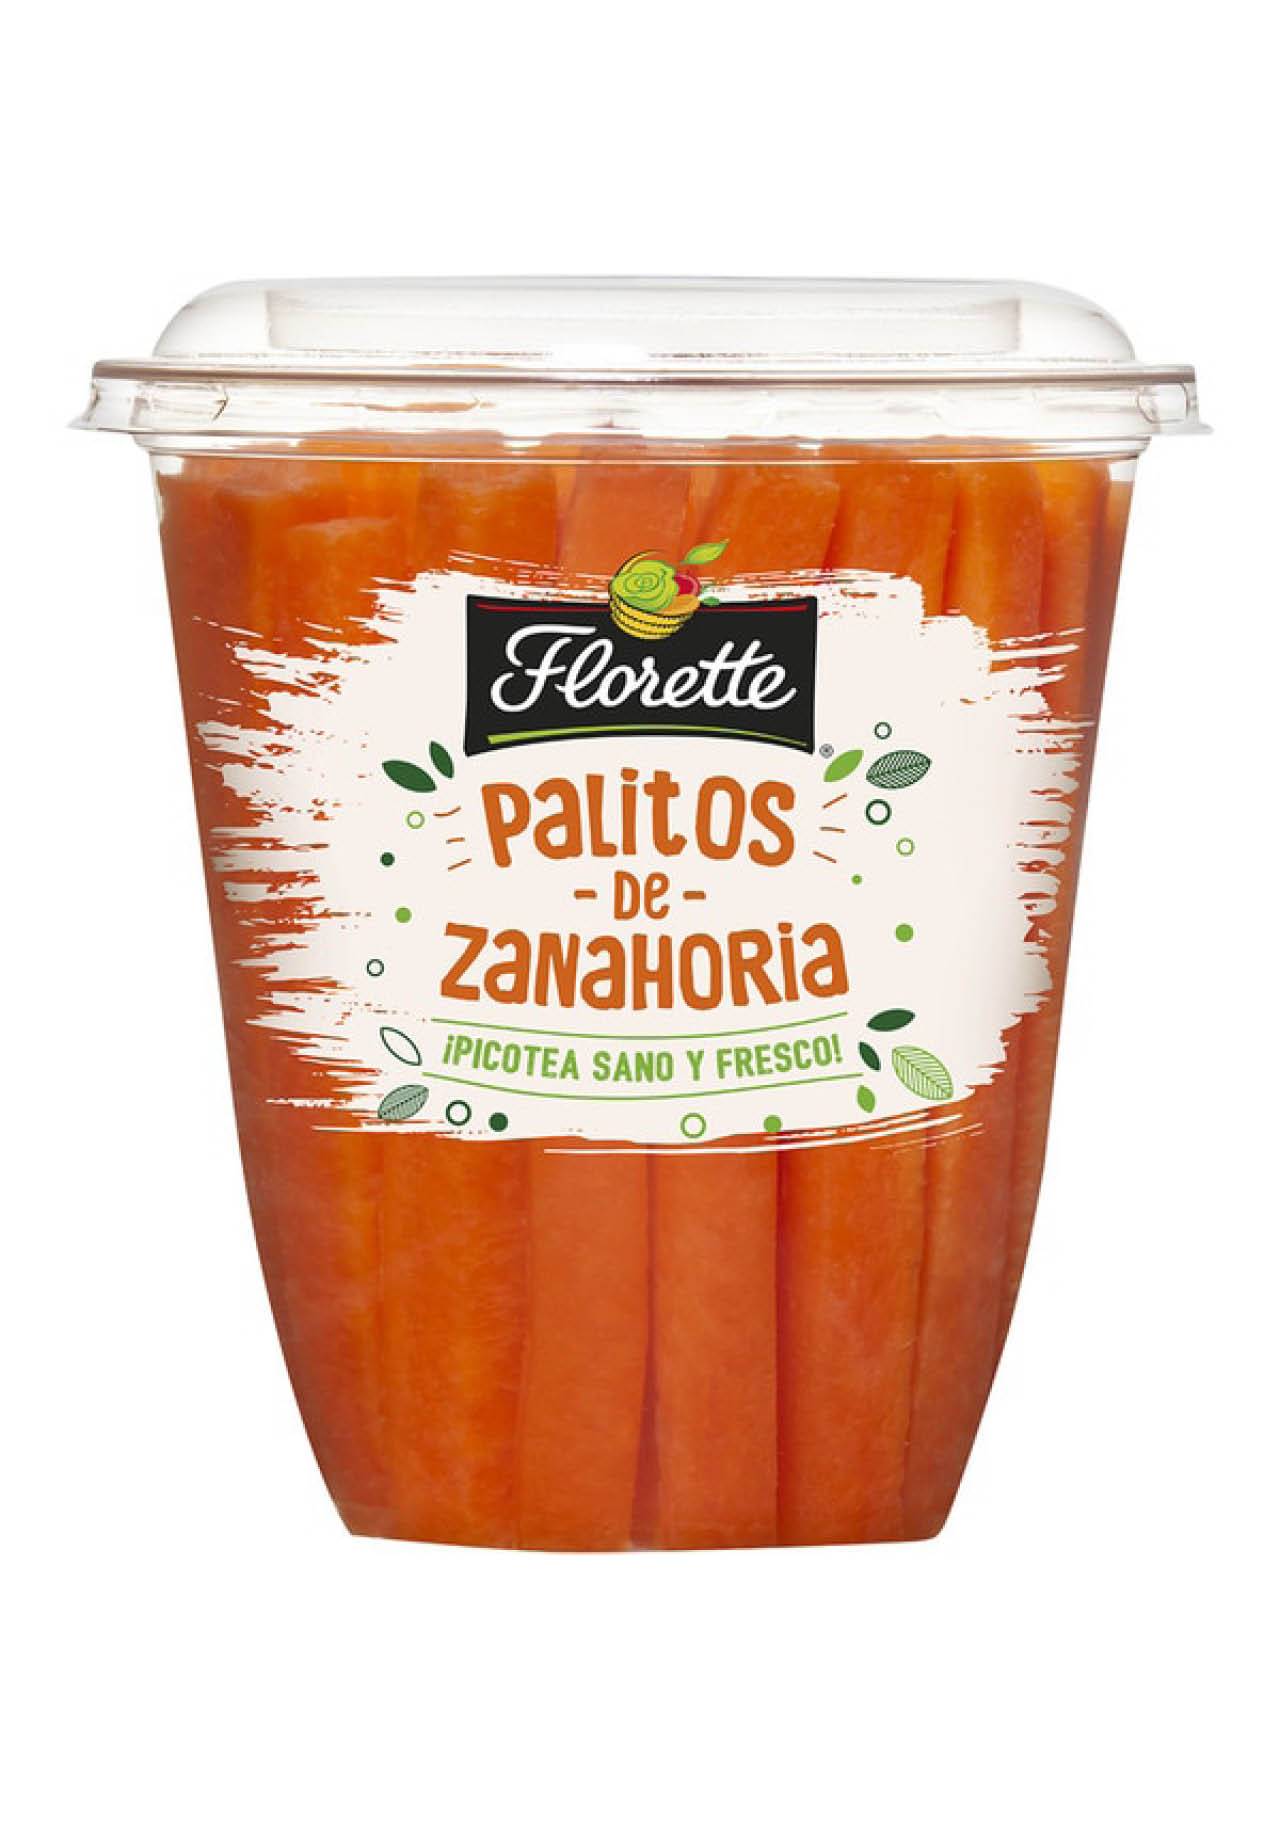 snacks saludables crudites palitos zanahoria